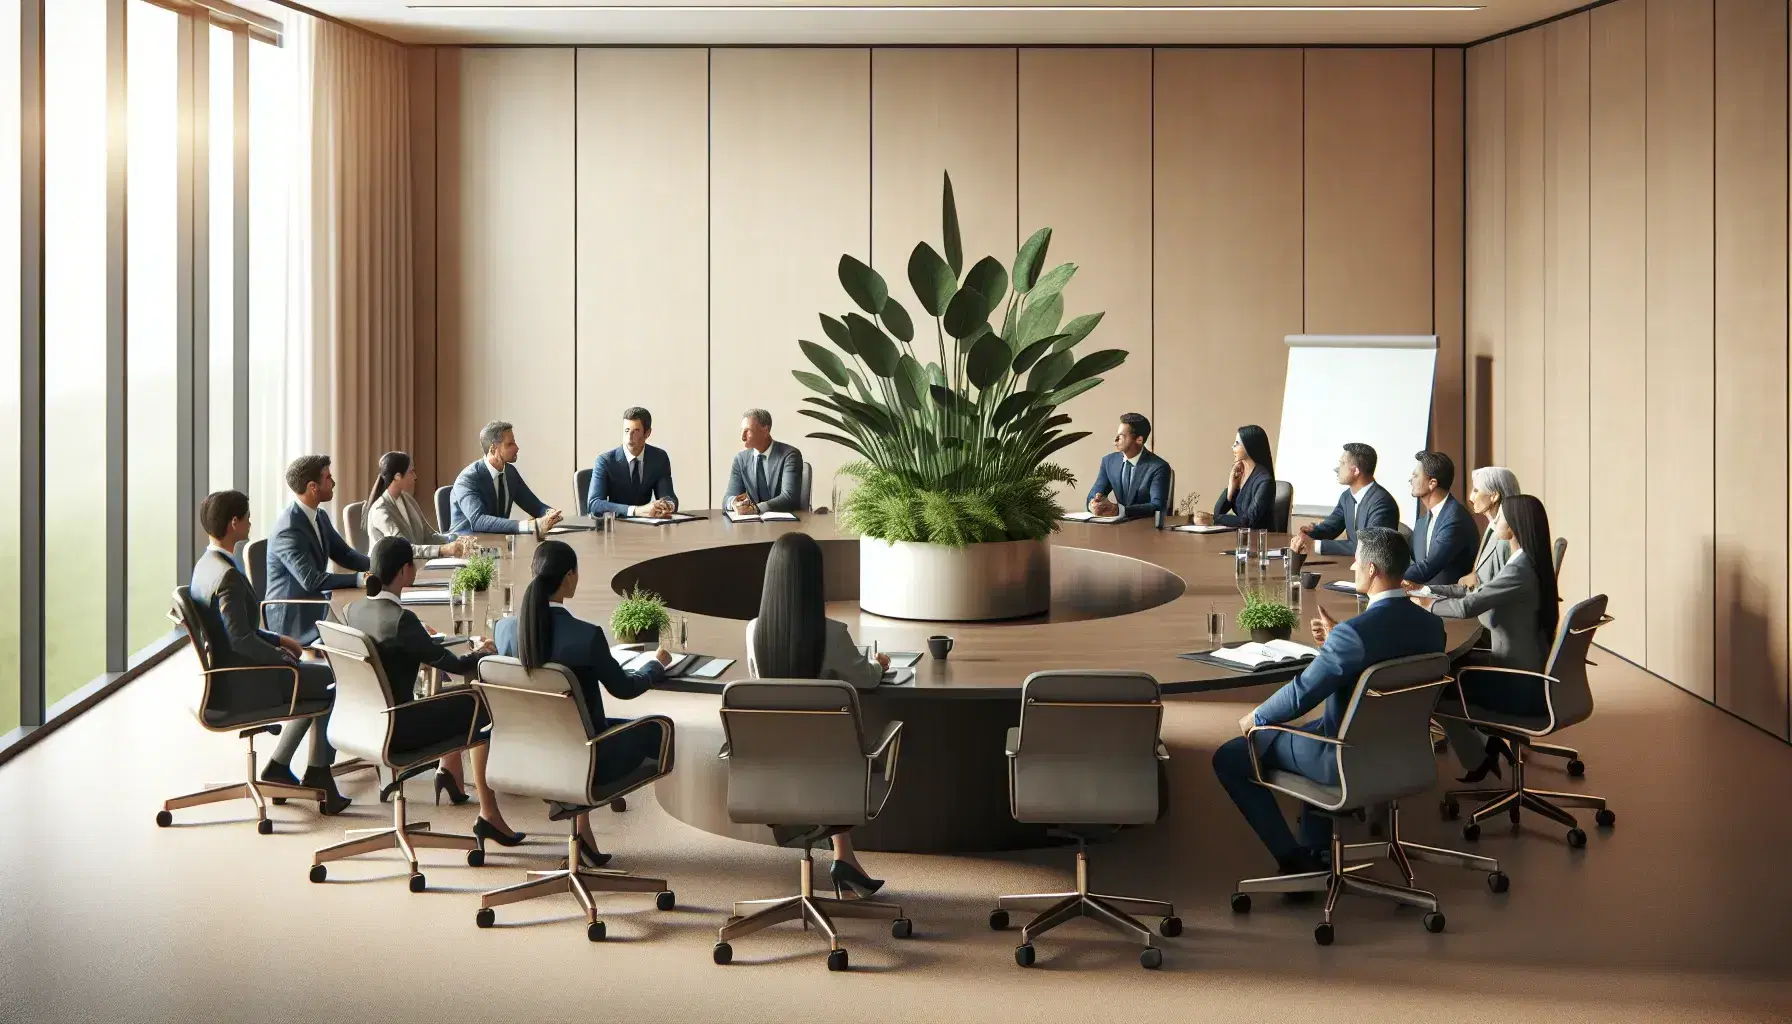 Grupo diverso de profesionales en reunión alrededor de una mesa ovalada con una planta verde, en una sala iluminada naturalmente con sillas azules y pizarra blanca al fondo.